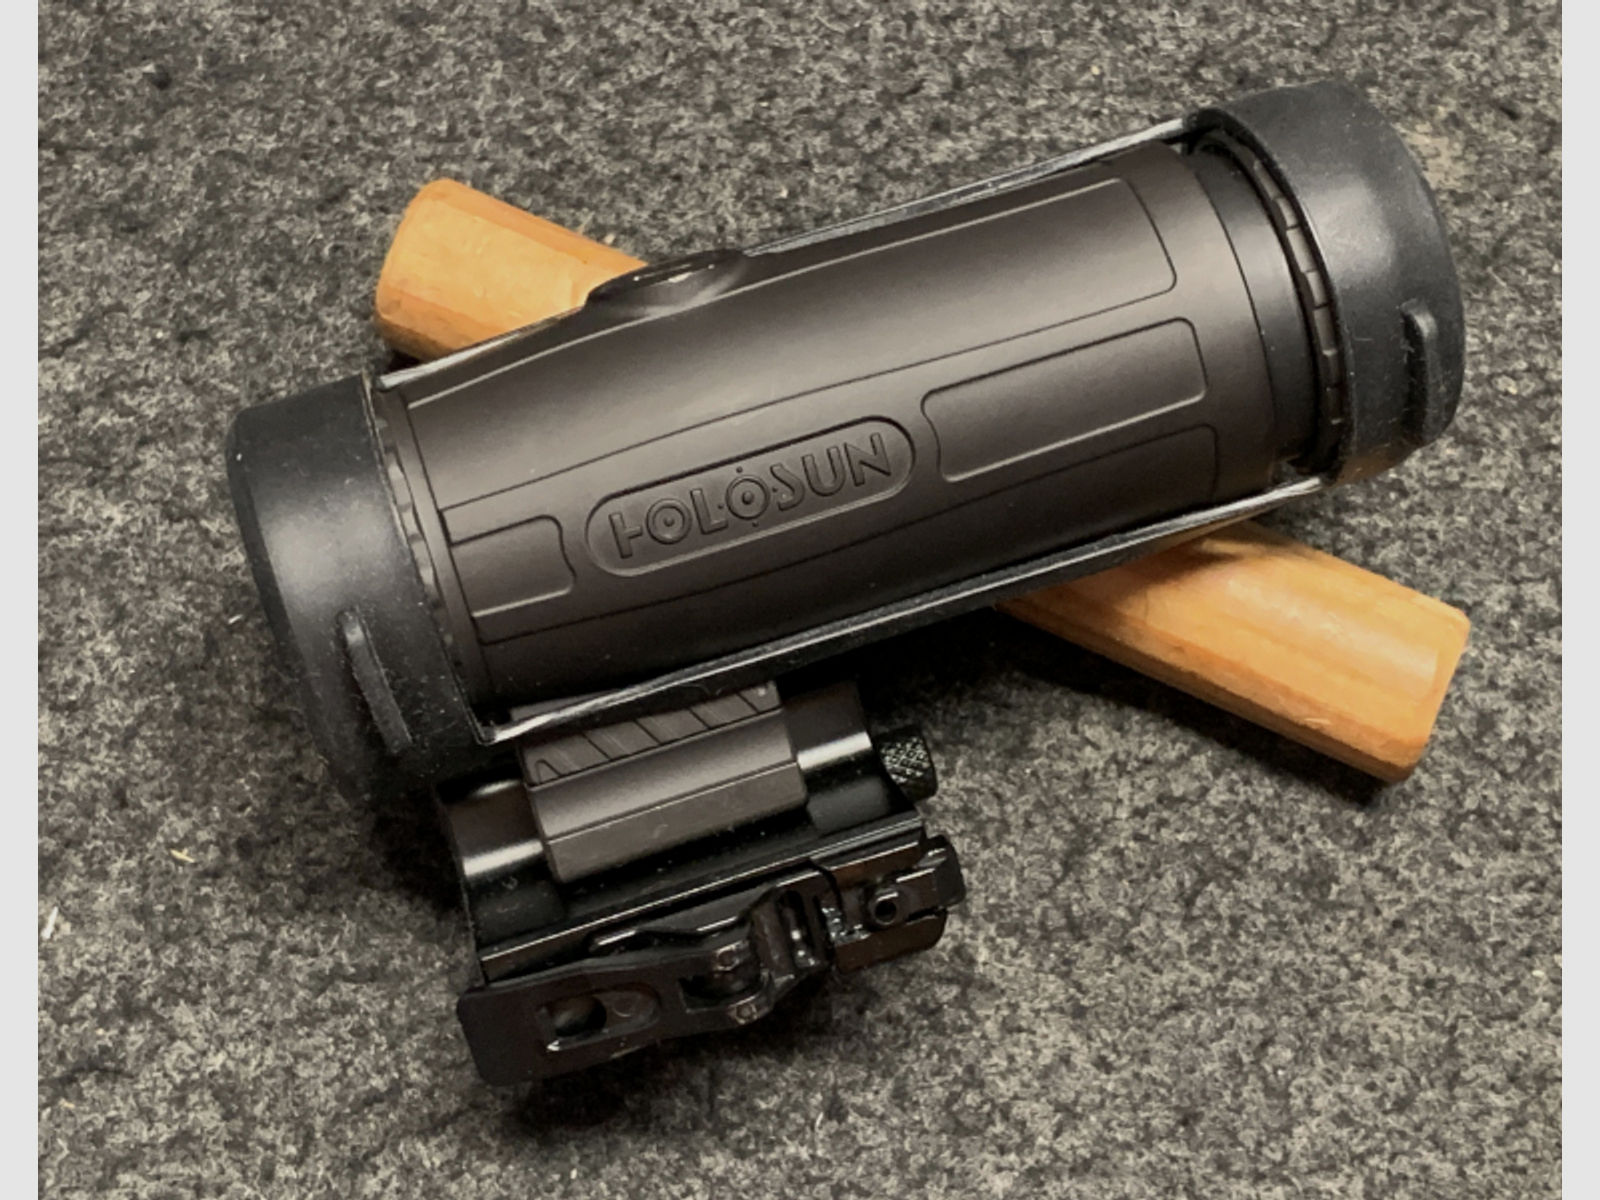 Holosun HM3X Magnifier mit 3x Vergrößerung